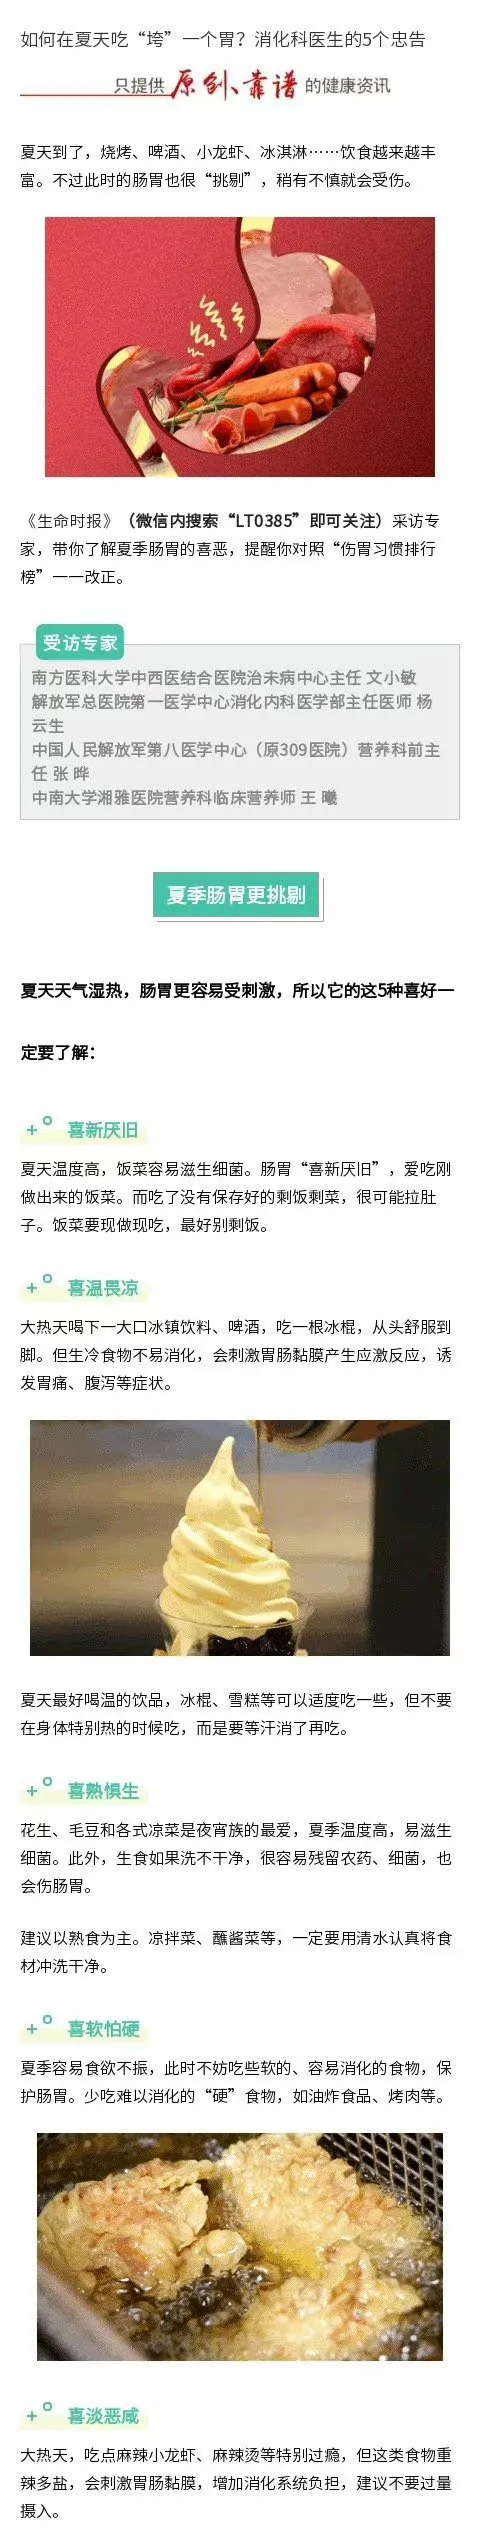 女子1月未吃火锅炫2斤羊肉被送医 女子在火锅店吃火锅 女子吃火锅发现